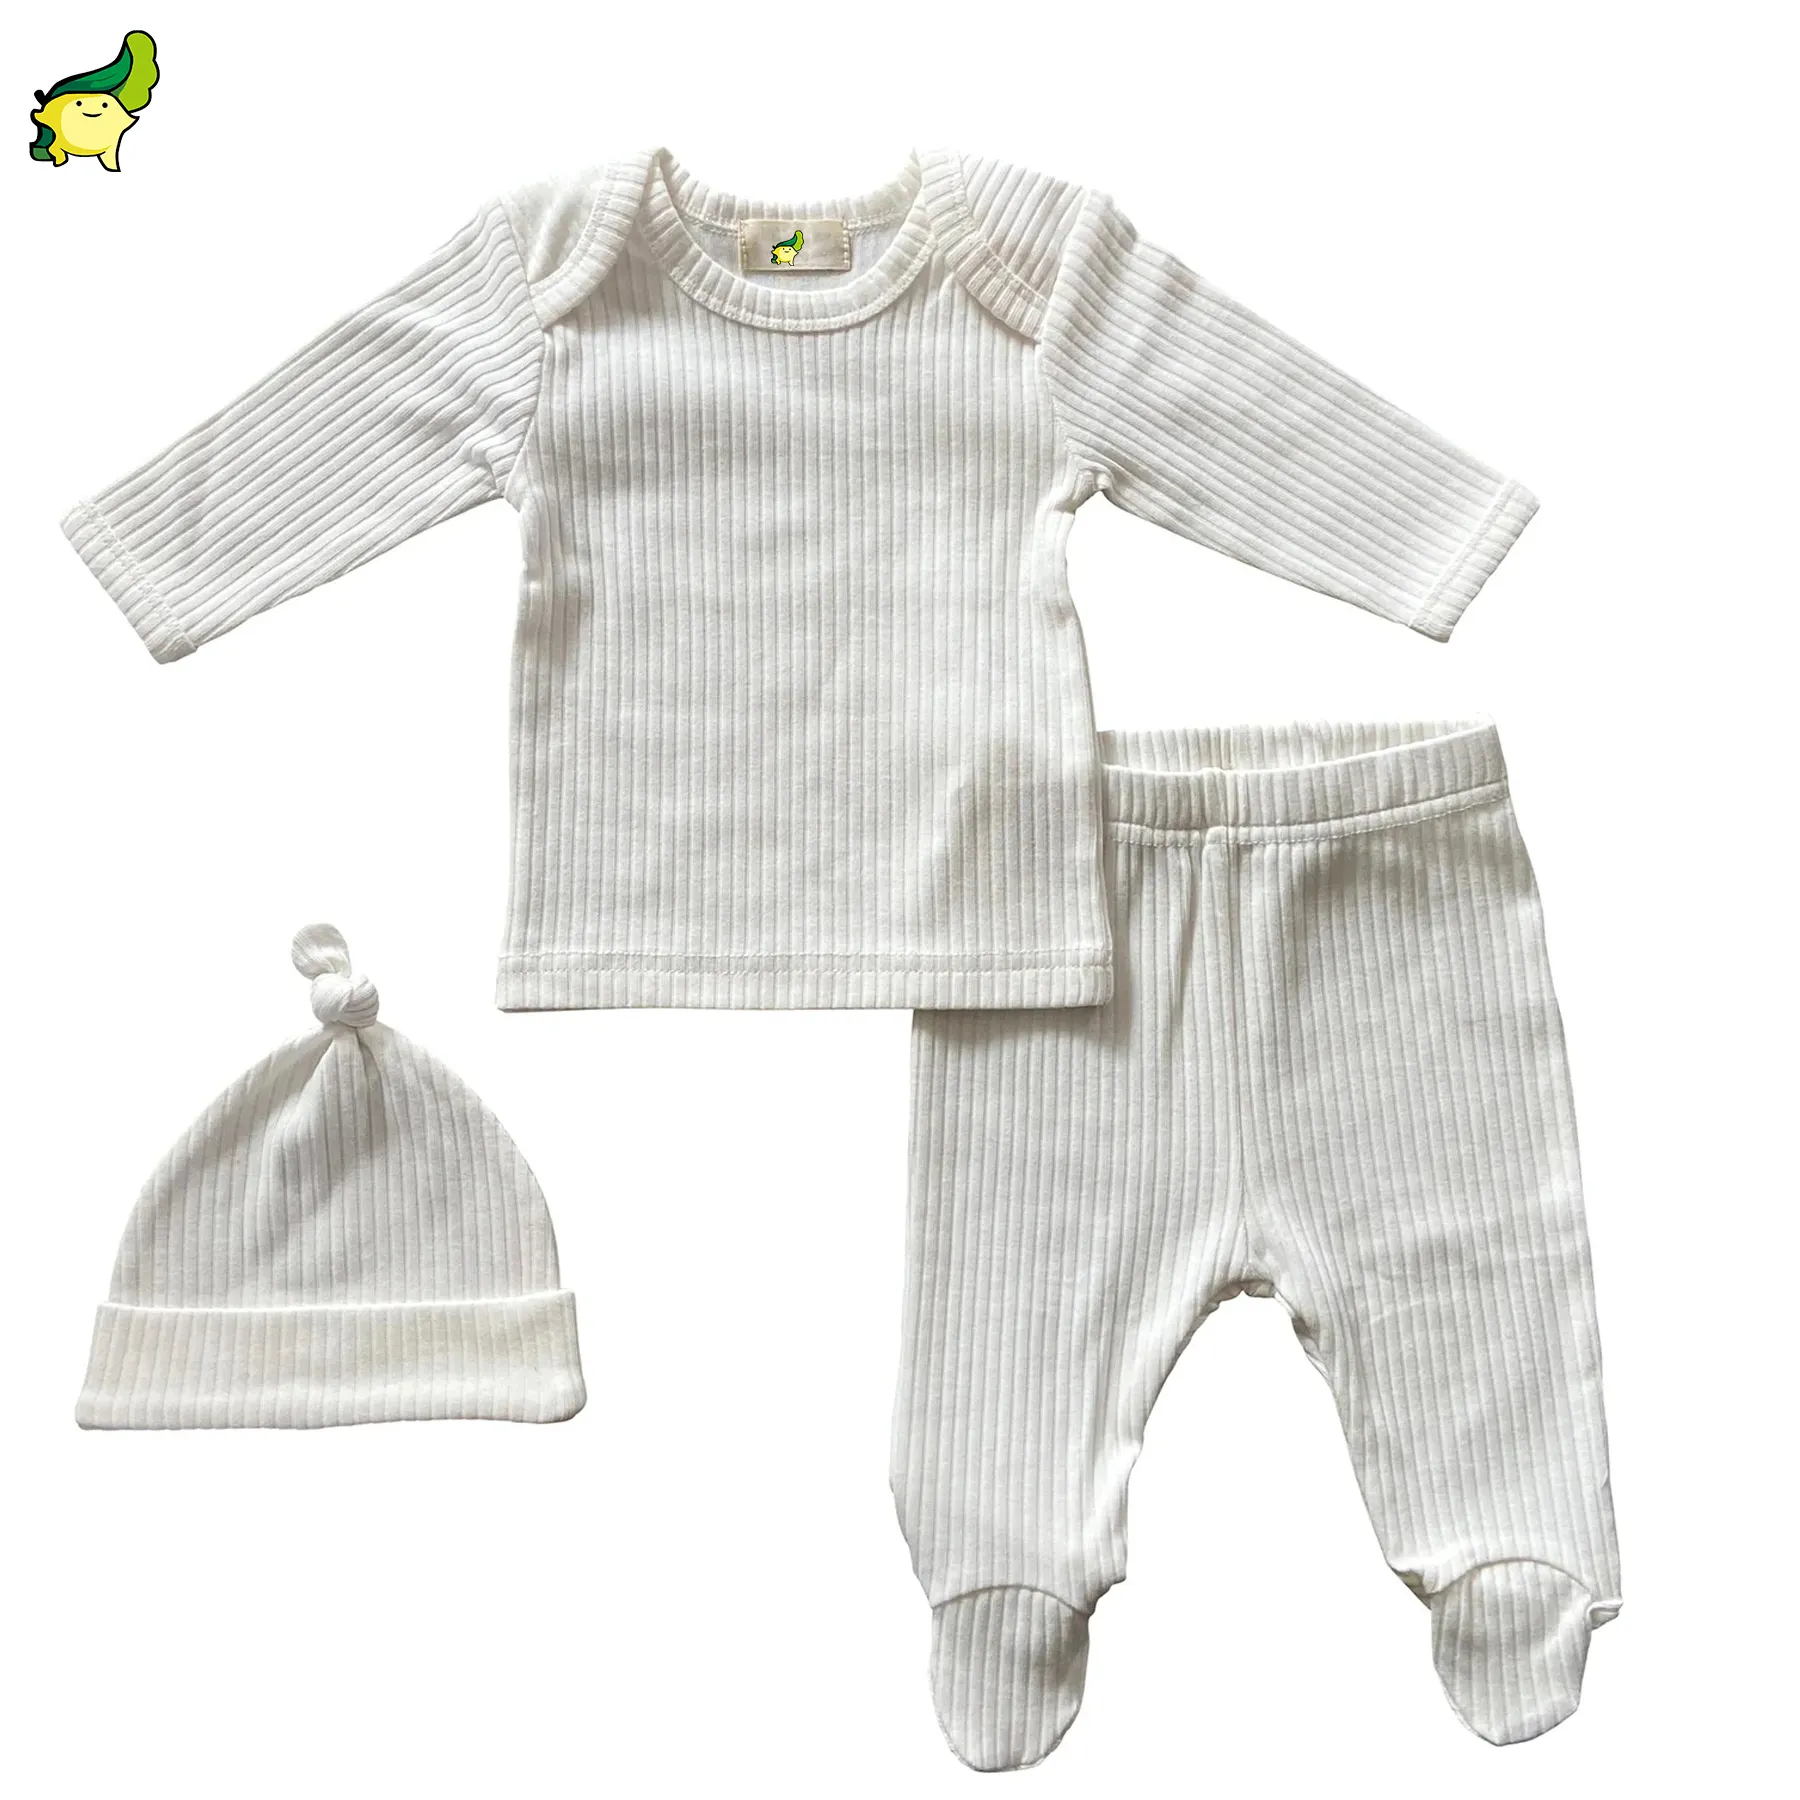 ชุดเสื้อผ้าเด็กทารกชายหญิง0-3เดือน,ชุดผ้าฝ้ายออร์แกนิค100% สำหรับเด็กทารกแรกเกิด